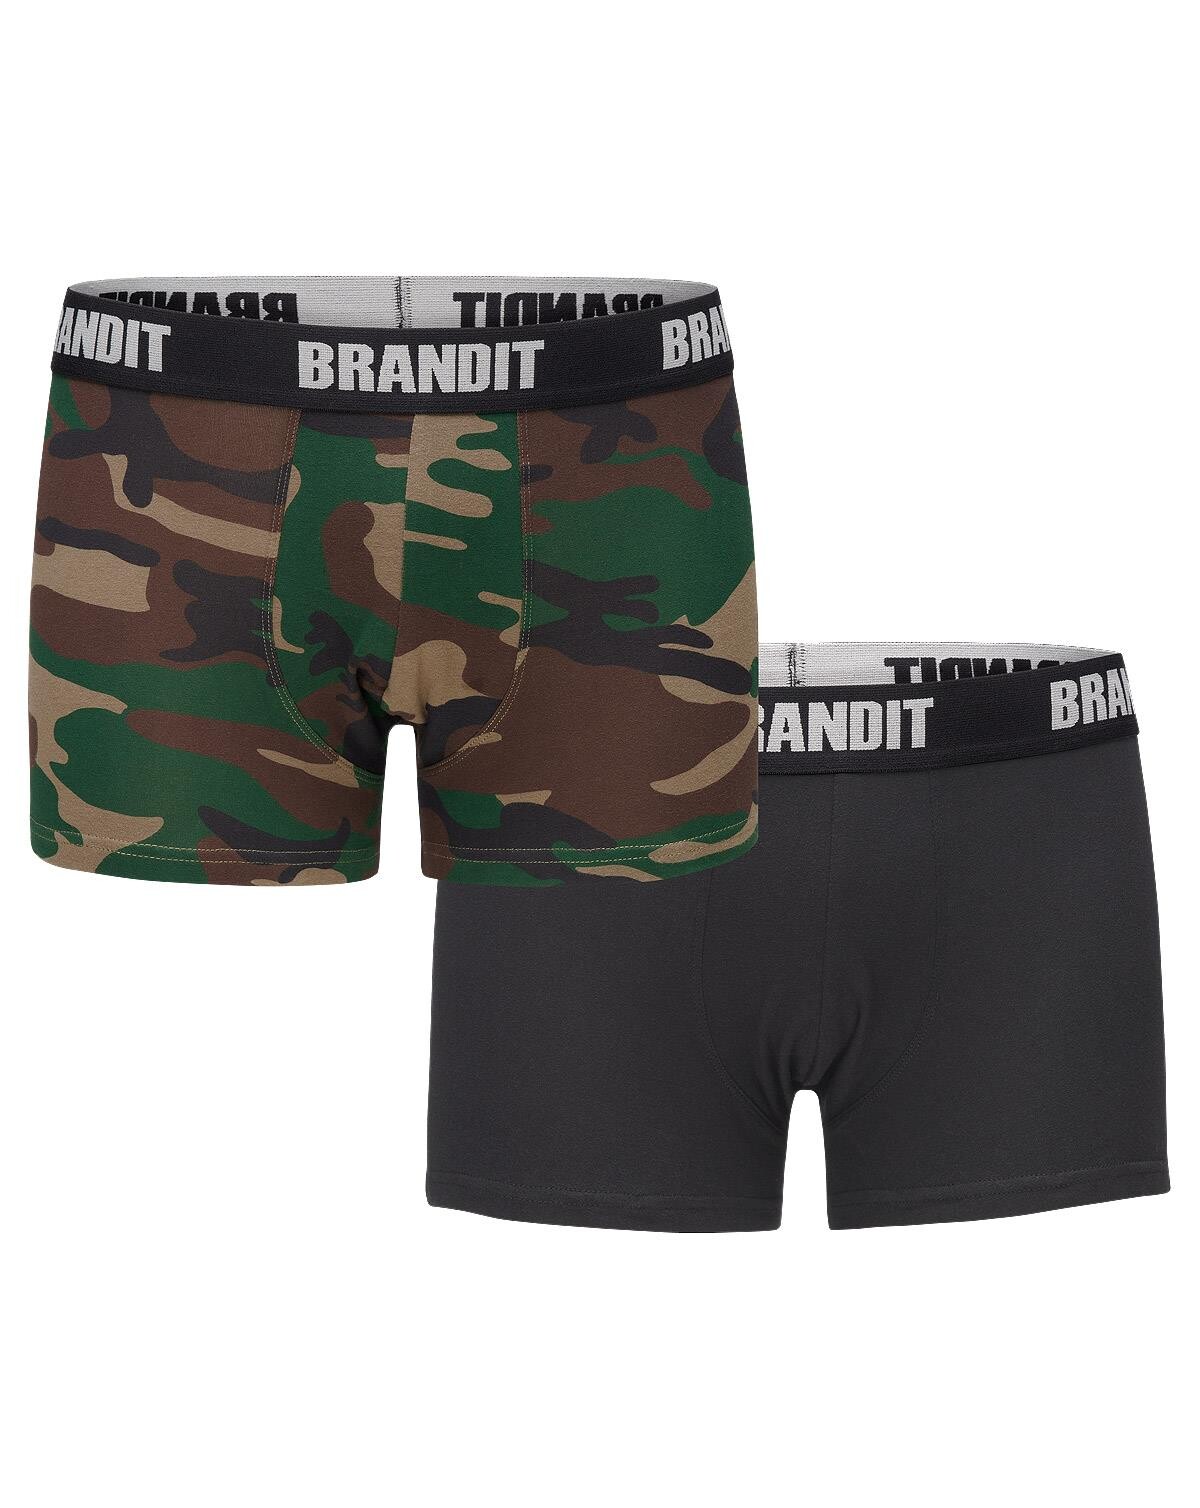 Brandit Boxershorts Logo 2er Pack (Woodland / Black, L)